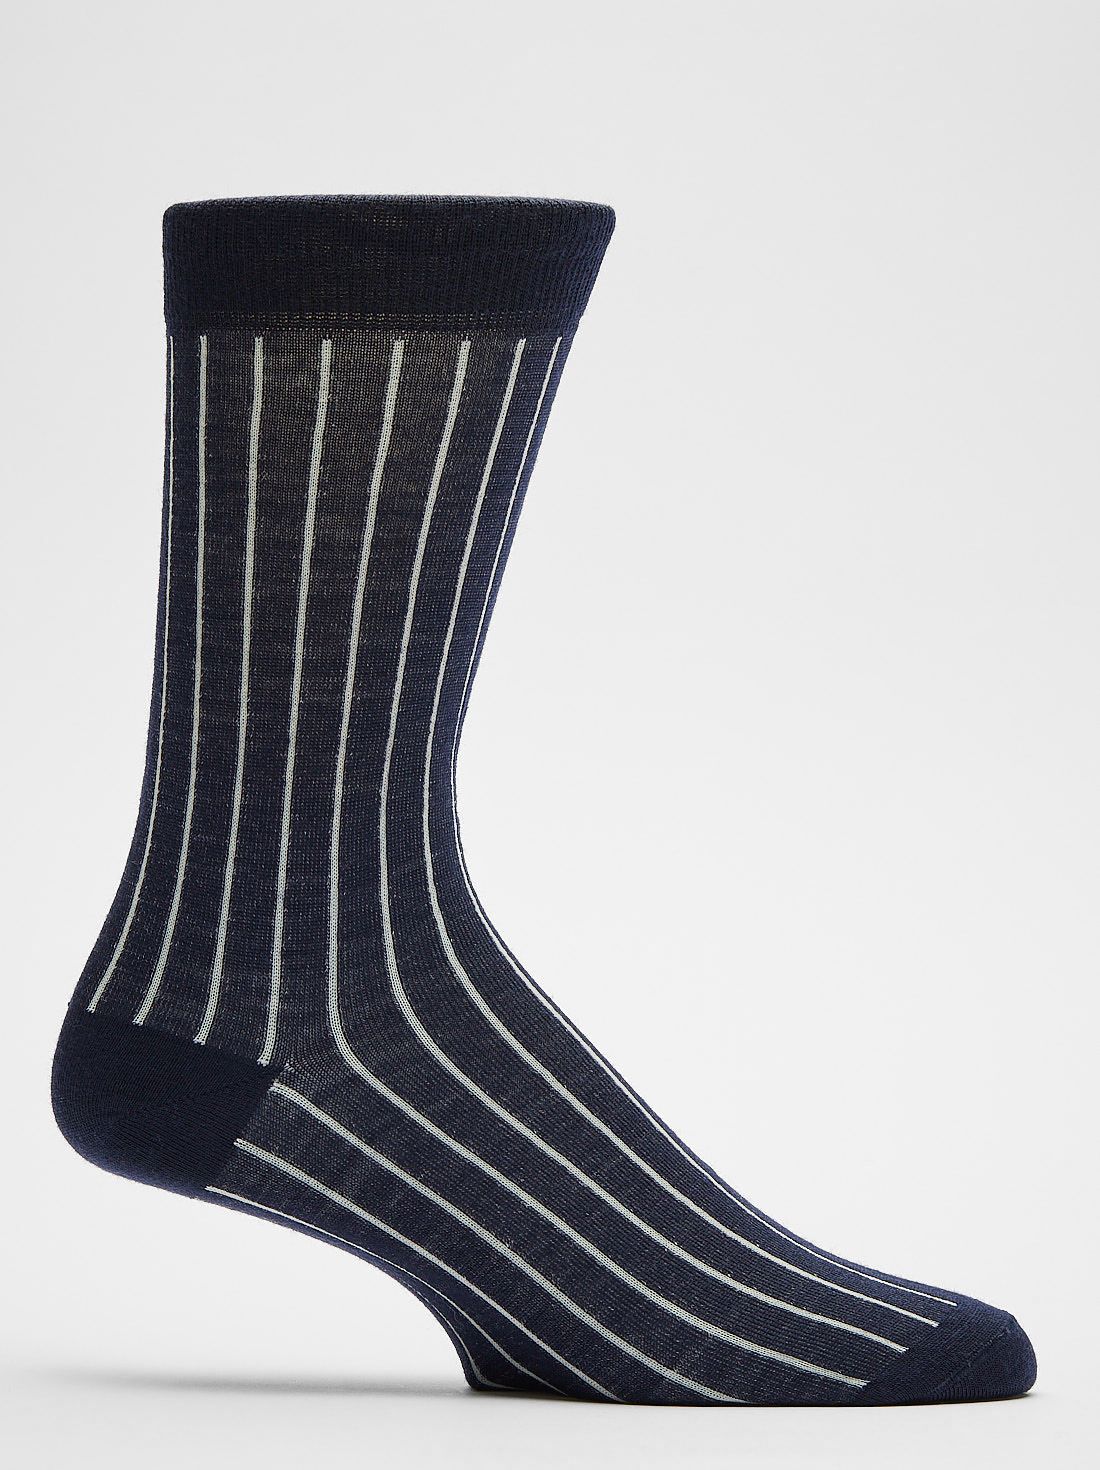 Blau-weiße Socken Vail